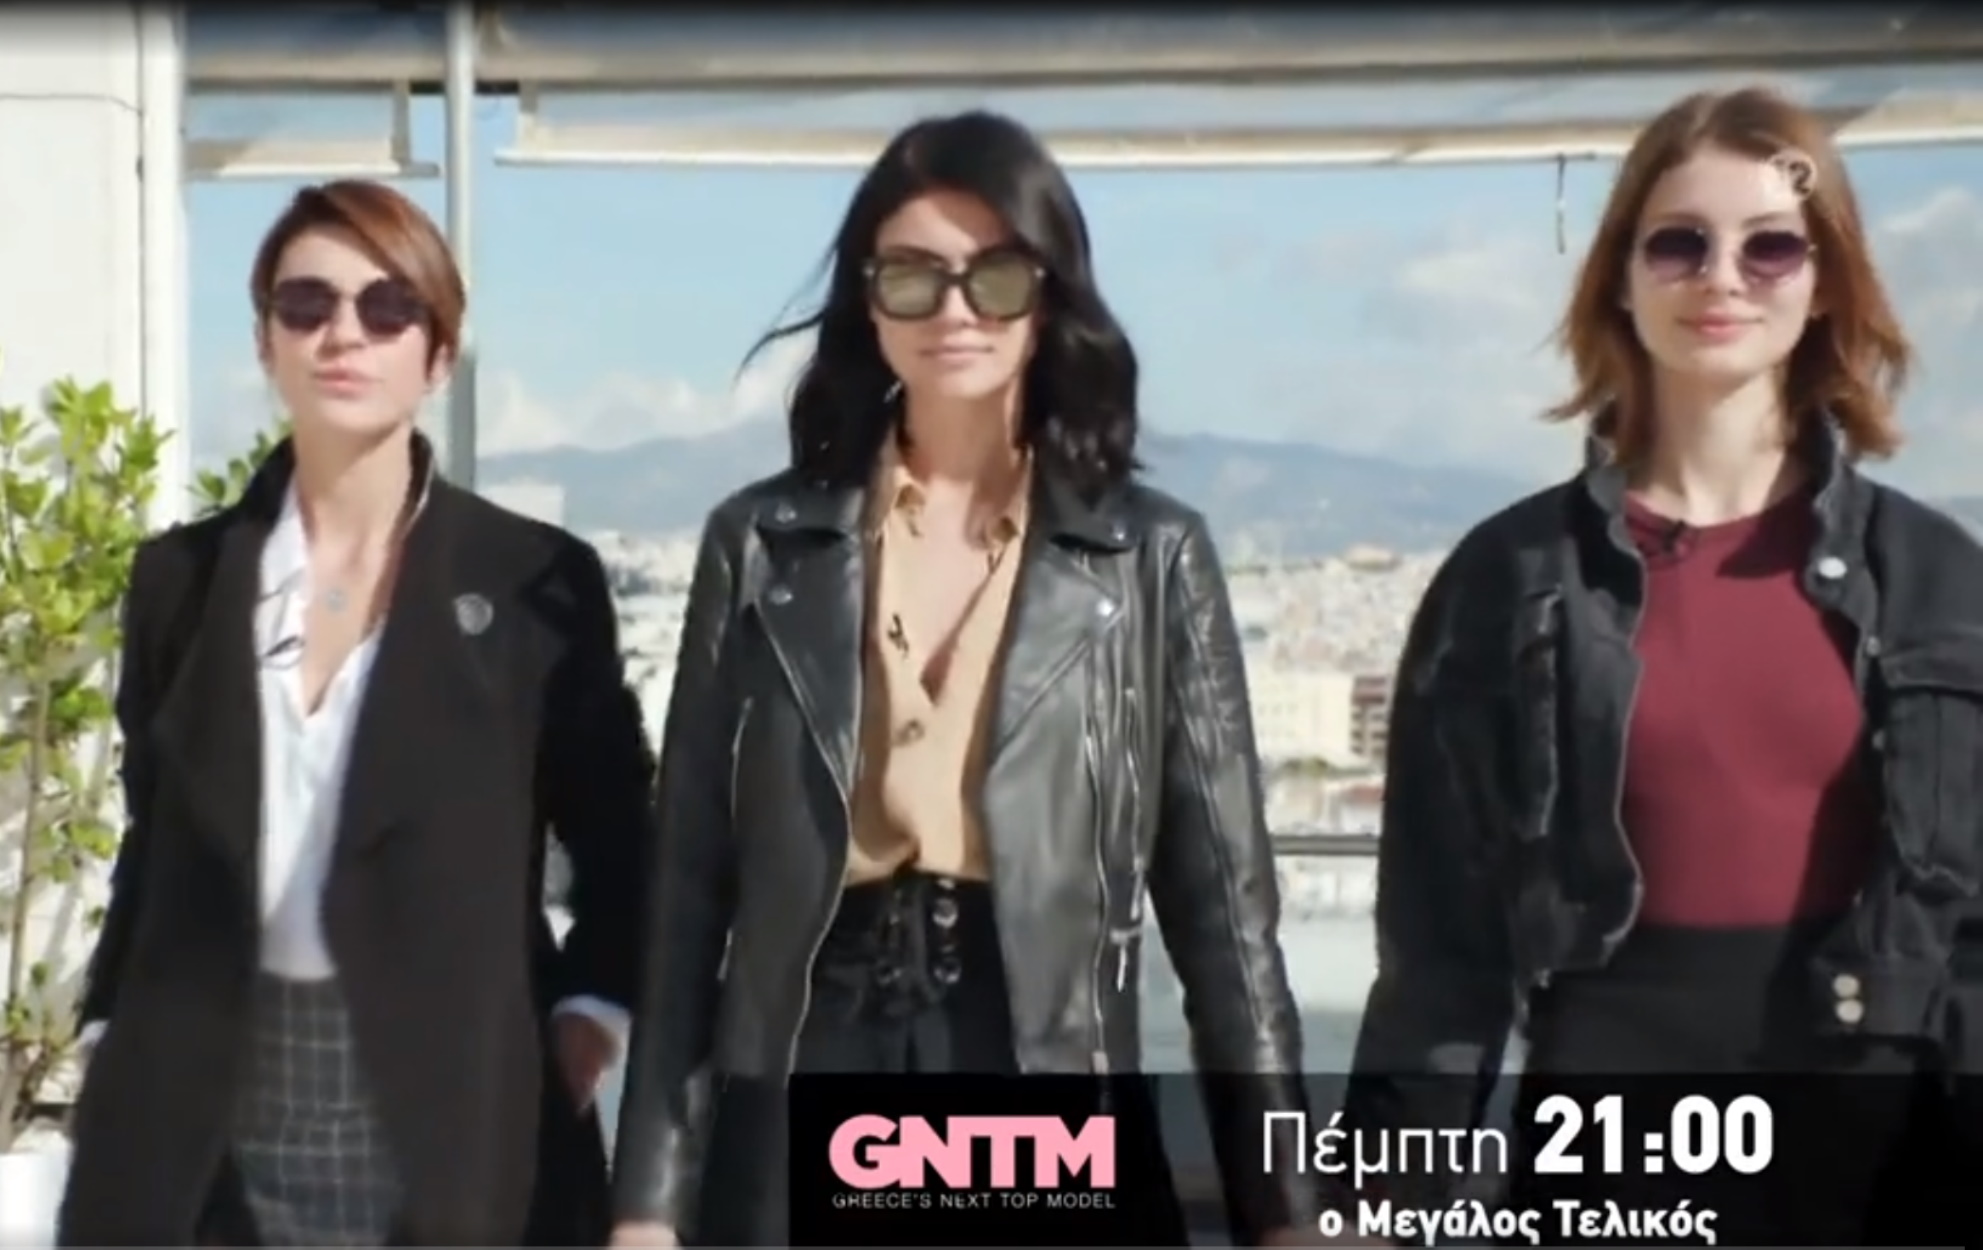 Τελικός GNTM: Στην τελική ευθεία για την κορυφή του Greece’s Next Top Model